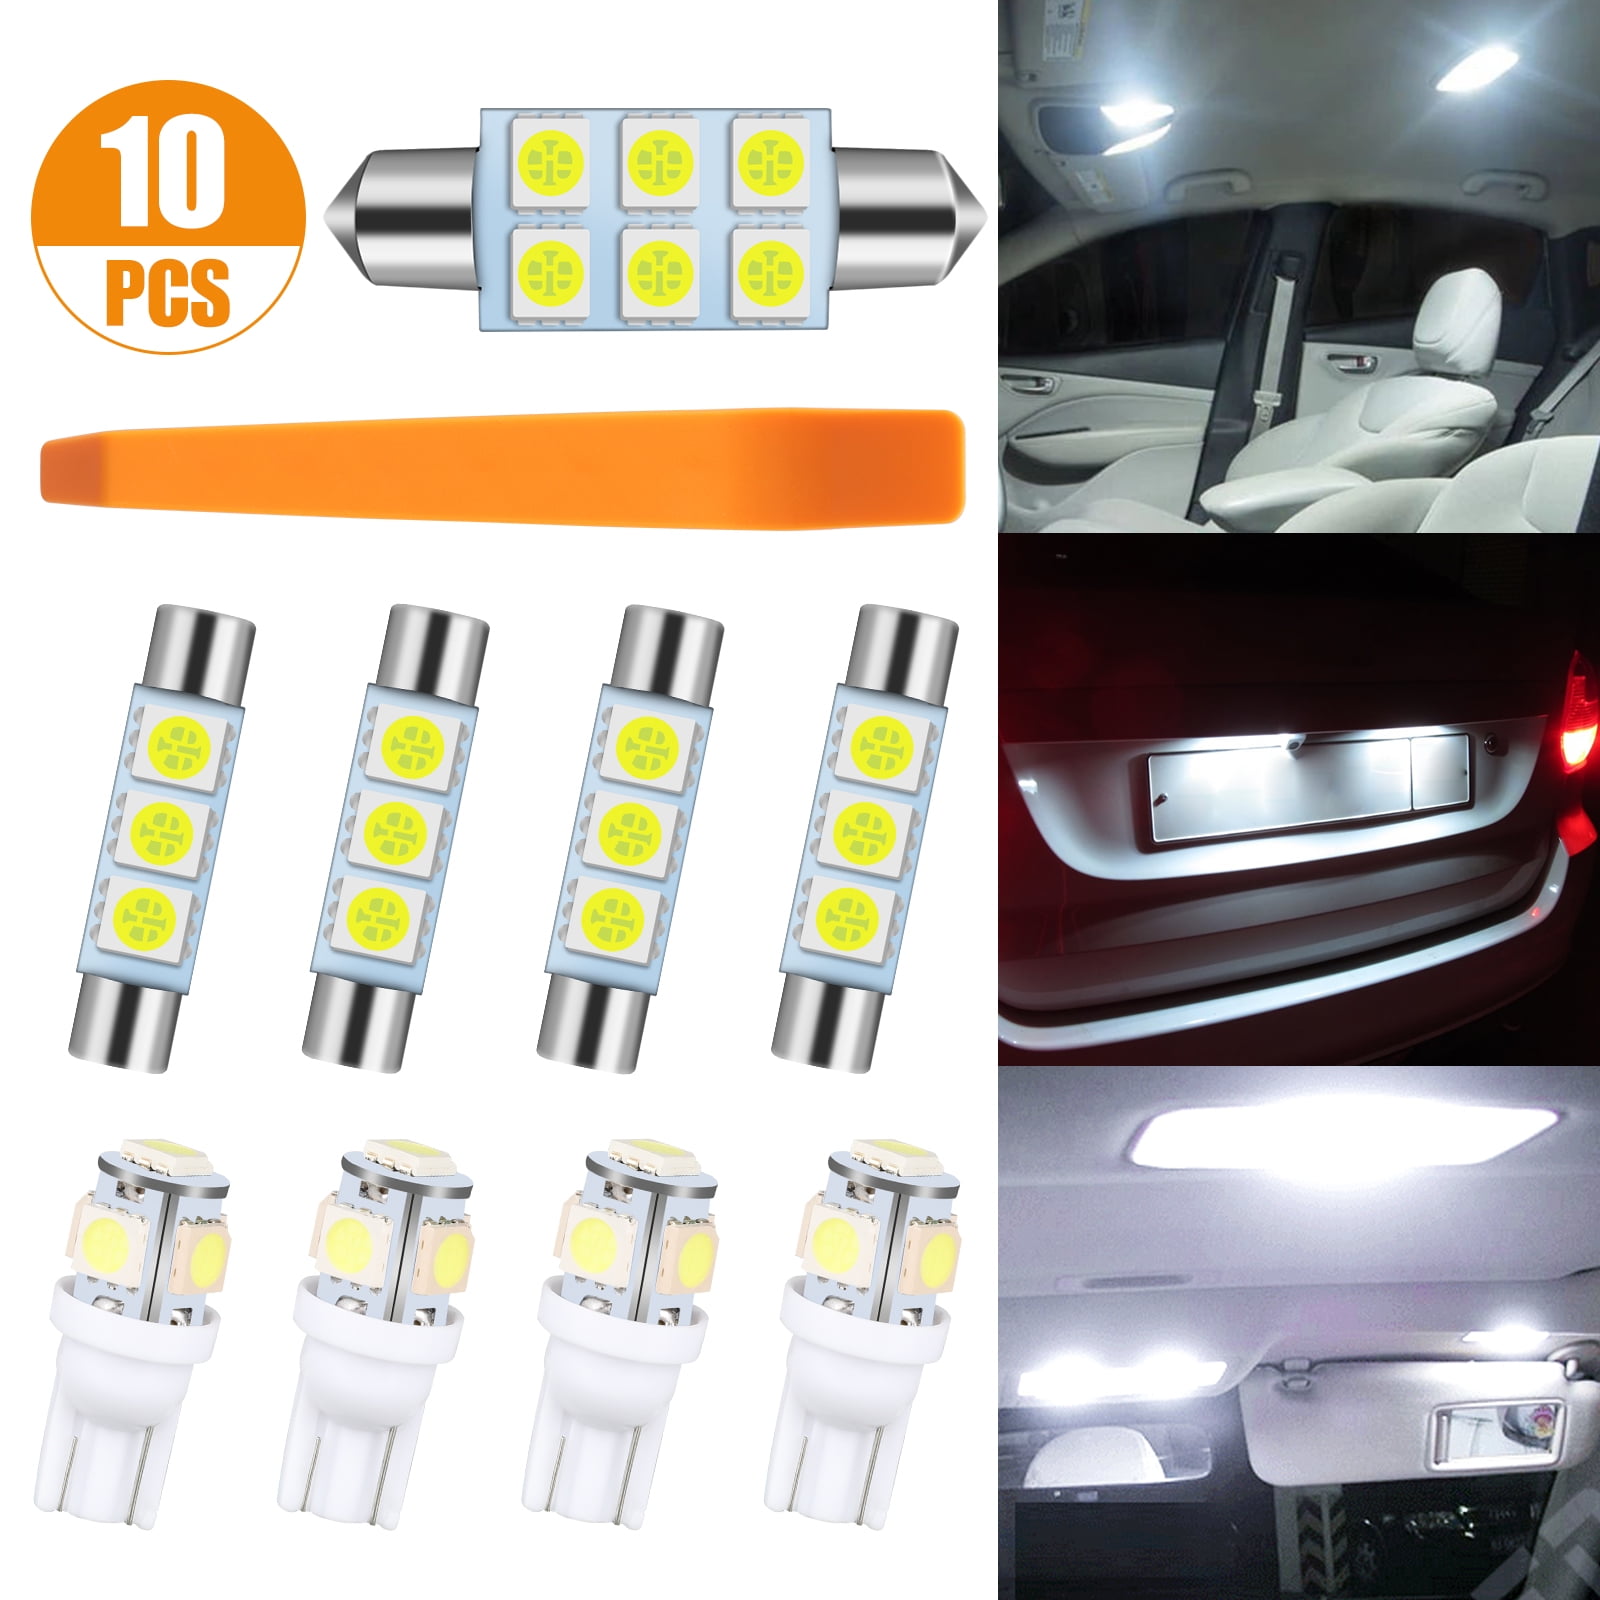 10pcs LED Xenon White Light Interior Package Kit for Jeep Wrangler